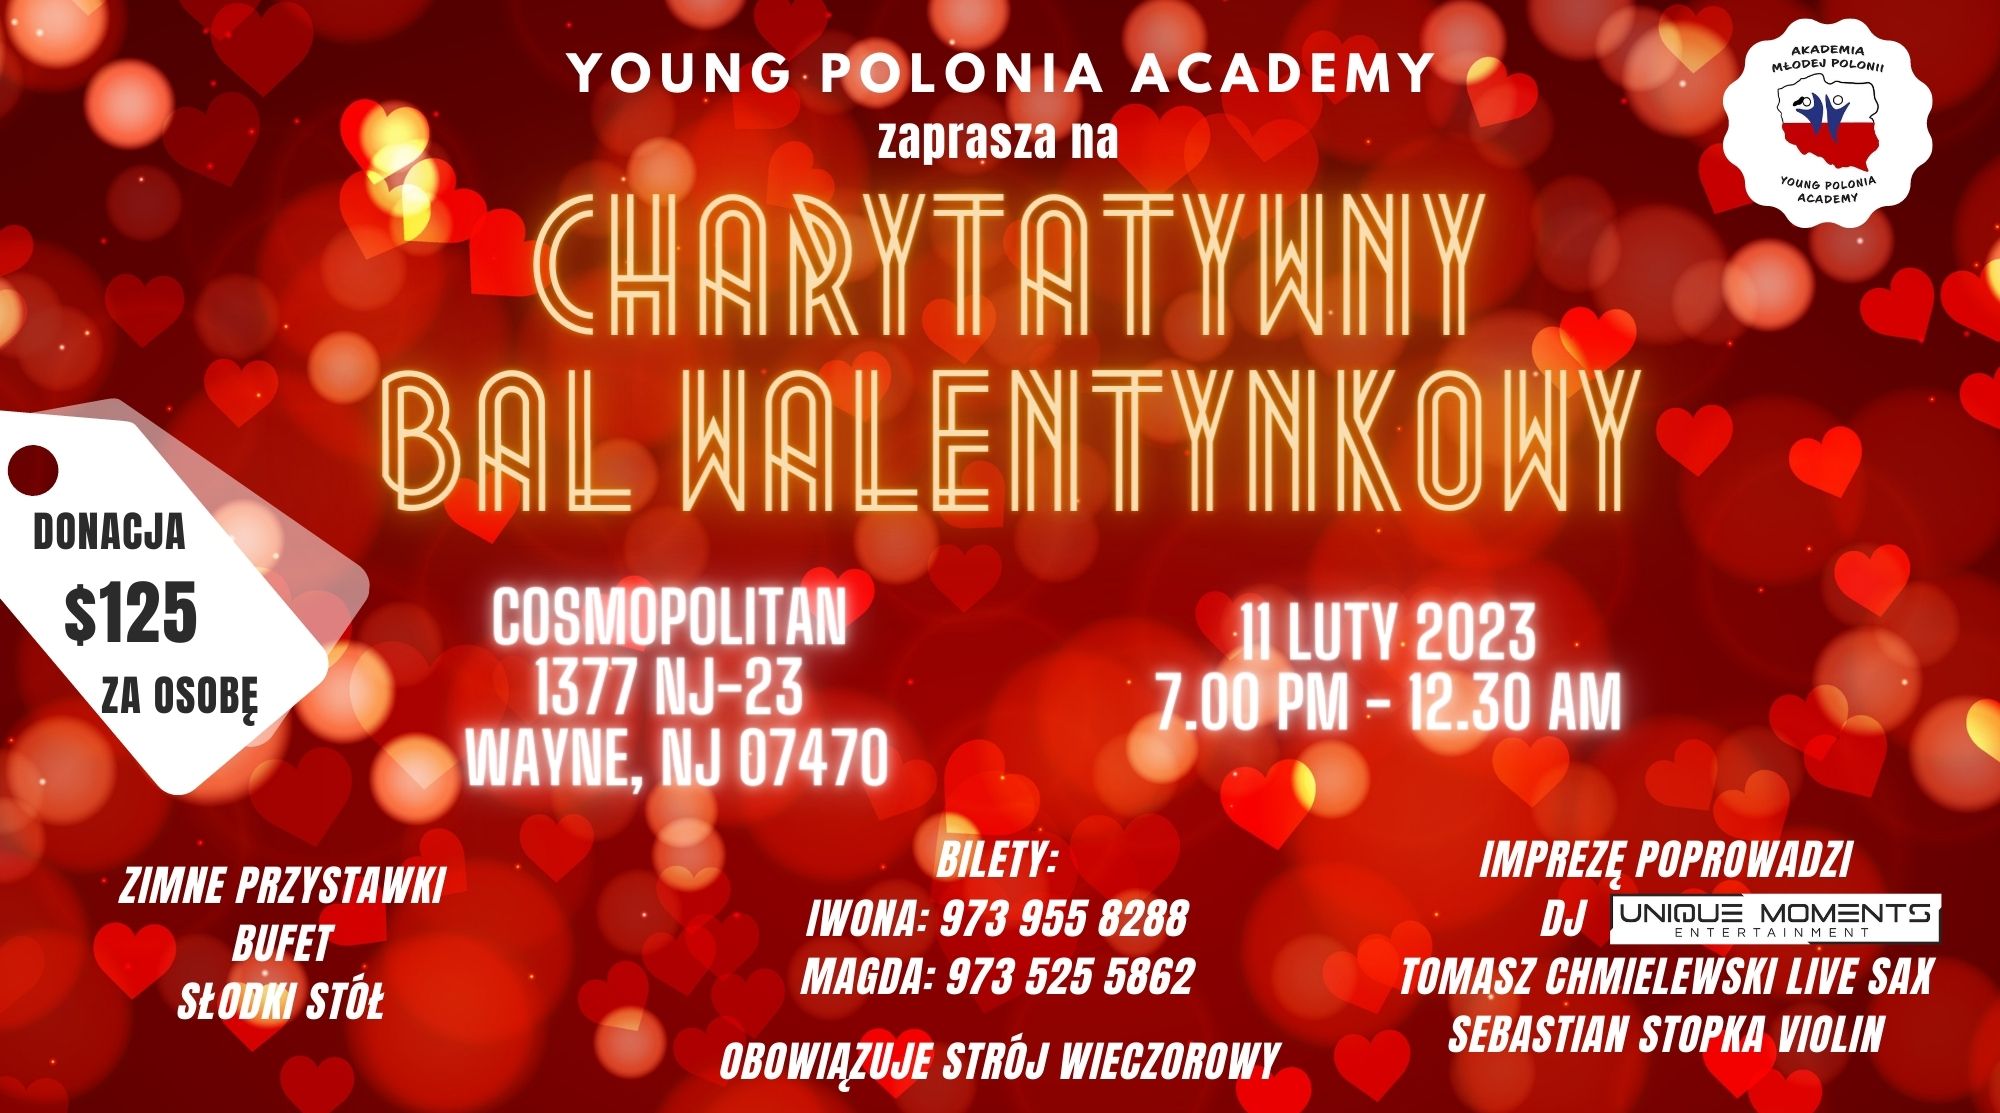 Young Polonia Academy w NJ zaprasza na Charytatywny Bal Walentynkowy